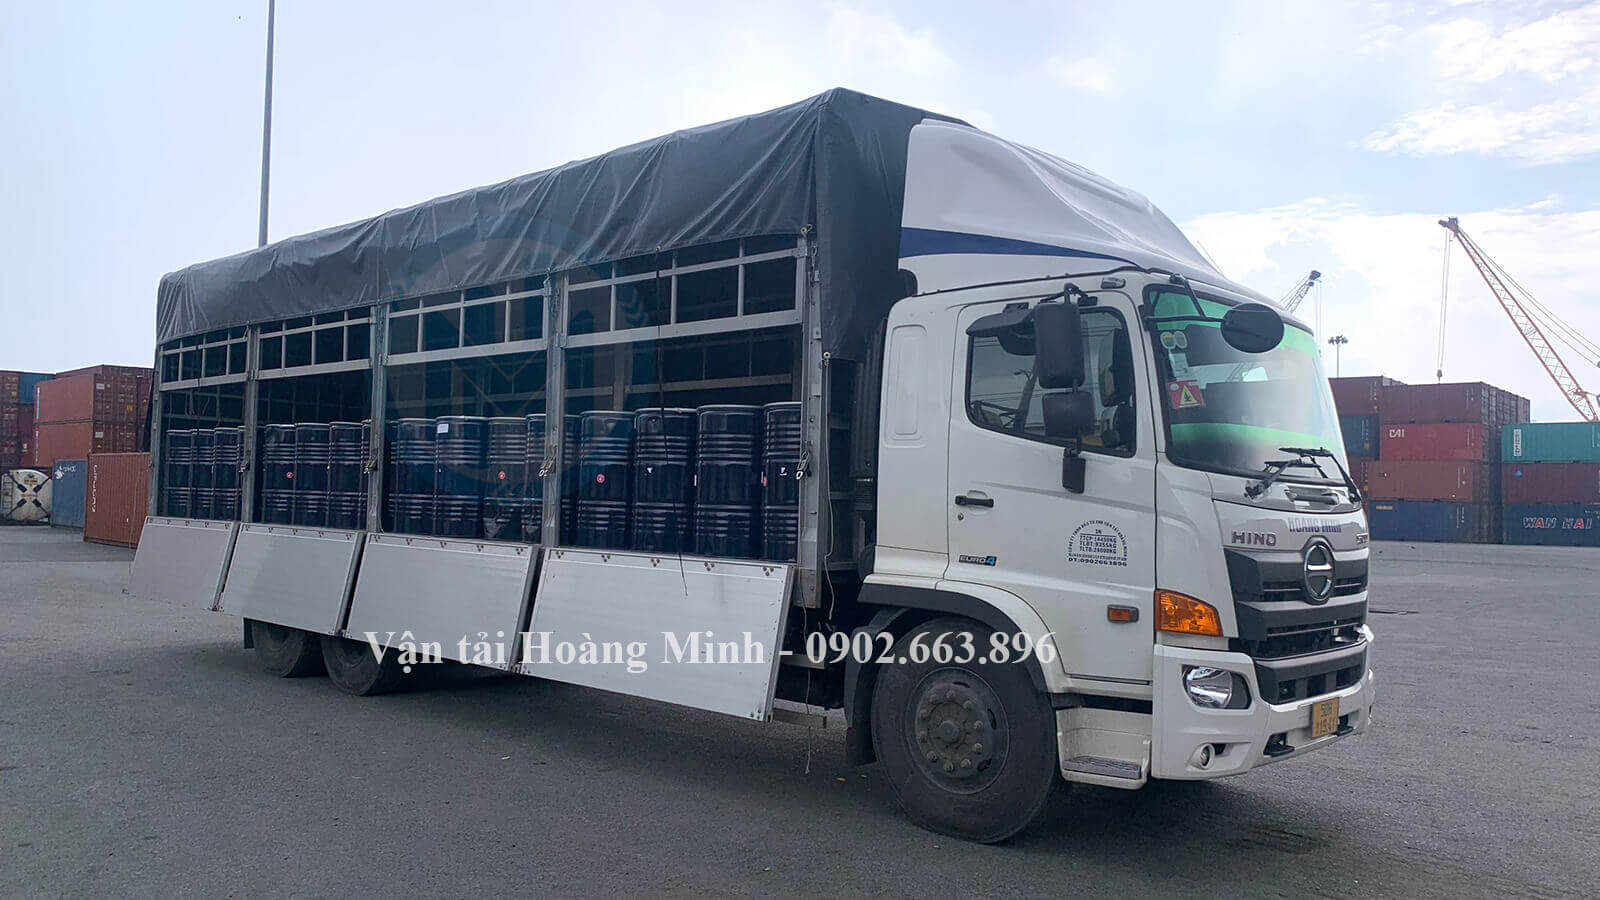 Hình ảnh xe tải chở hàng hoá chất dạng phuy tại cảng biển chở về kho khách hàng tại Tiền Giang